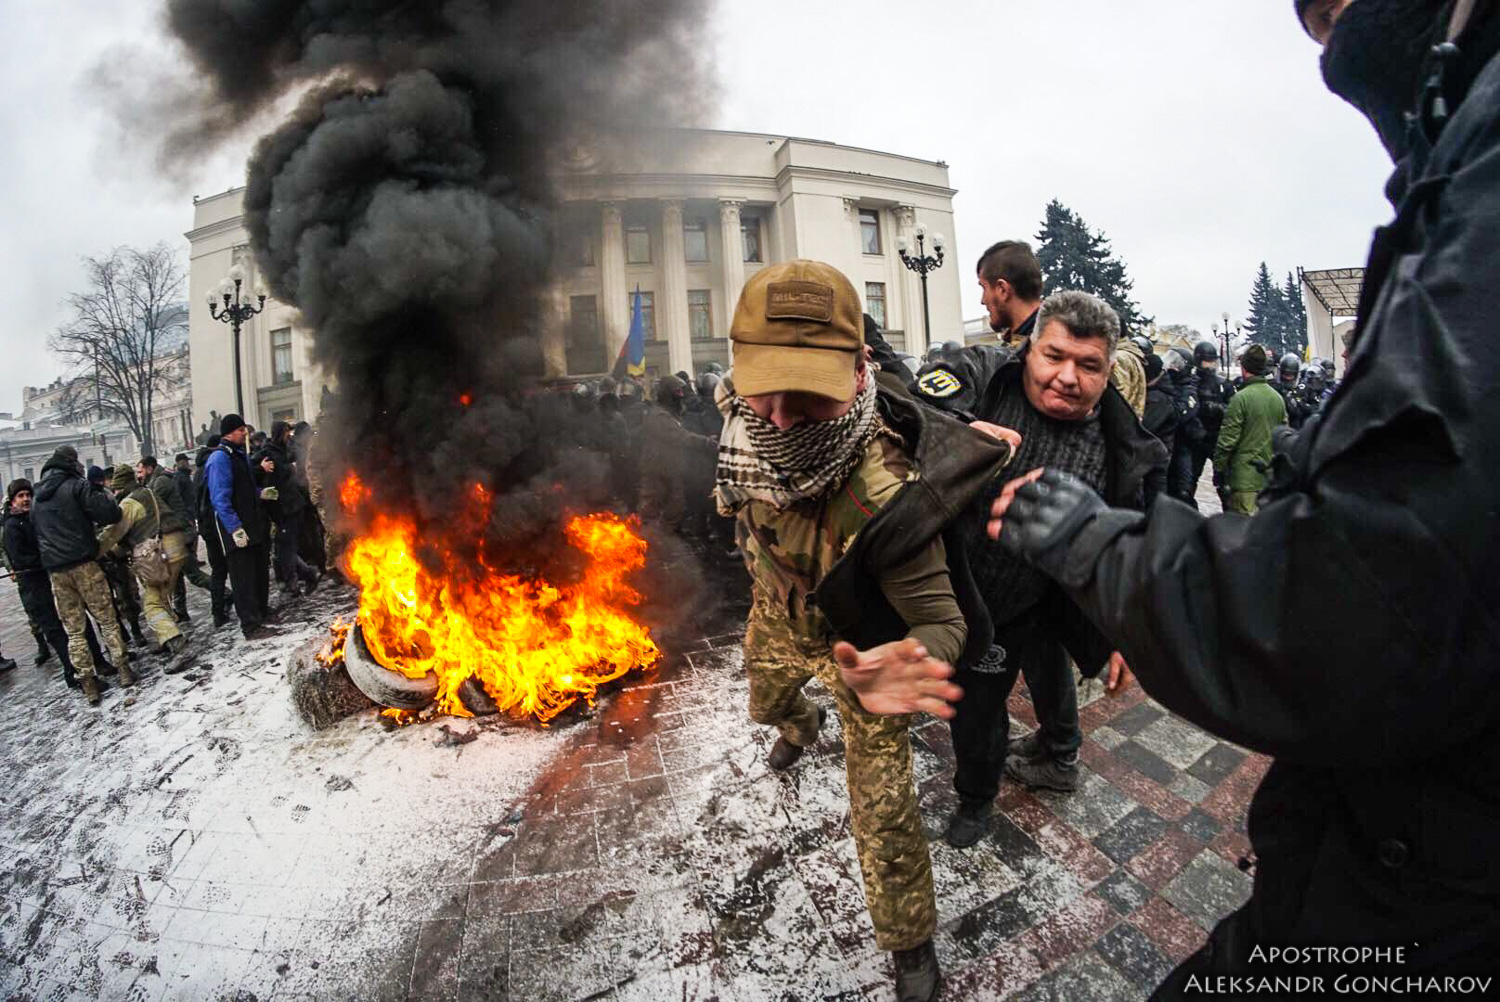 Donbas - Ukraine News in brief. Tuesday 16 January. [Ukrainian sources] 0bfd5e1e6c9844fa4430d63104e877e2